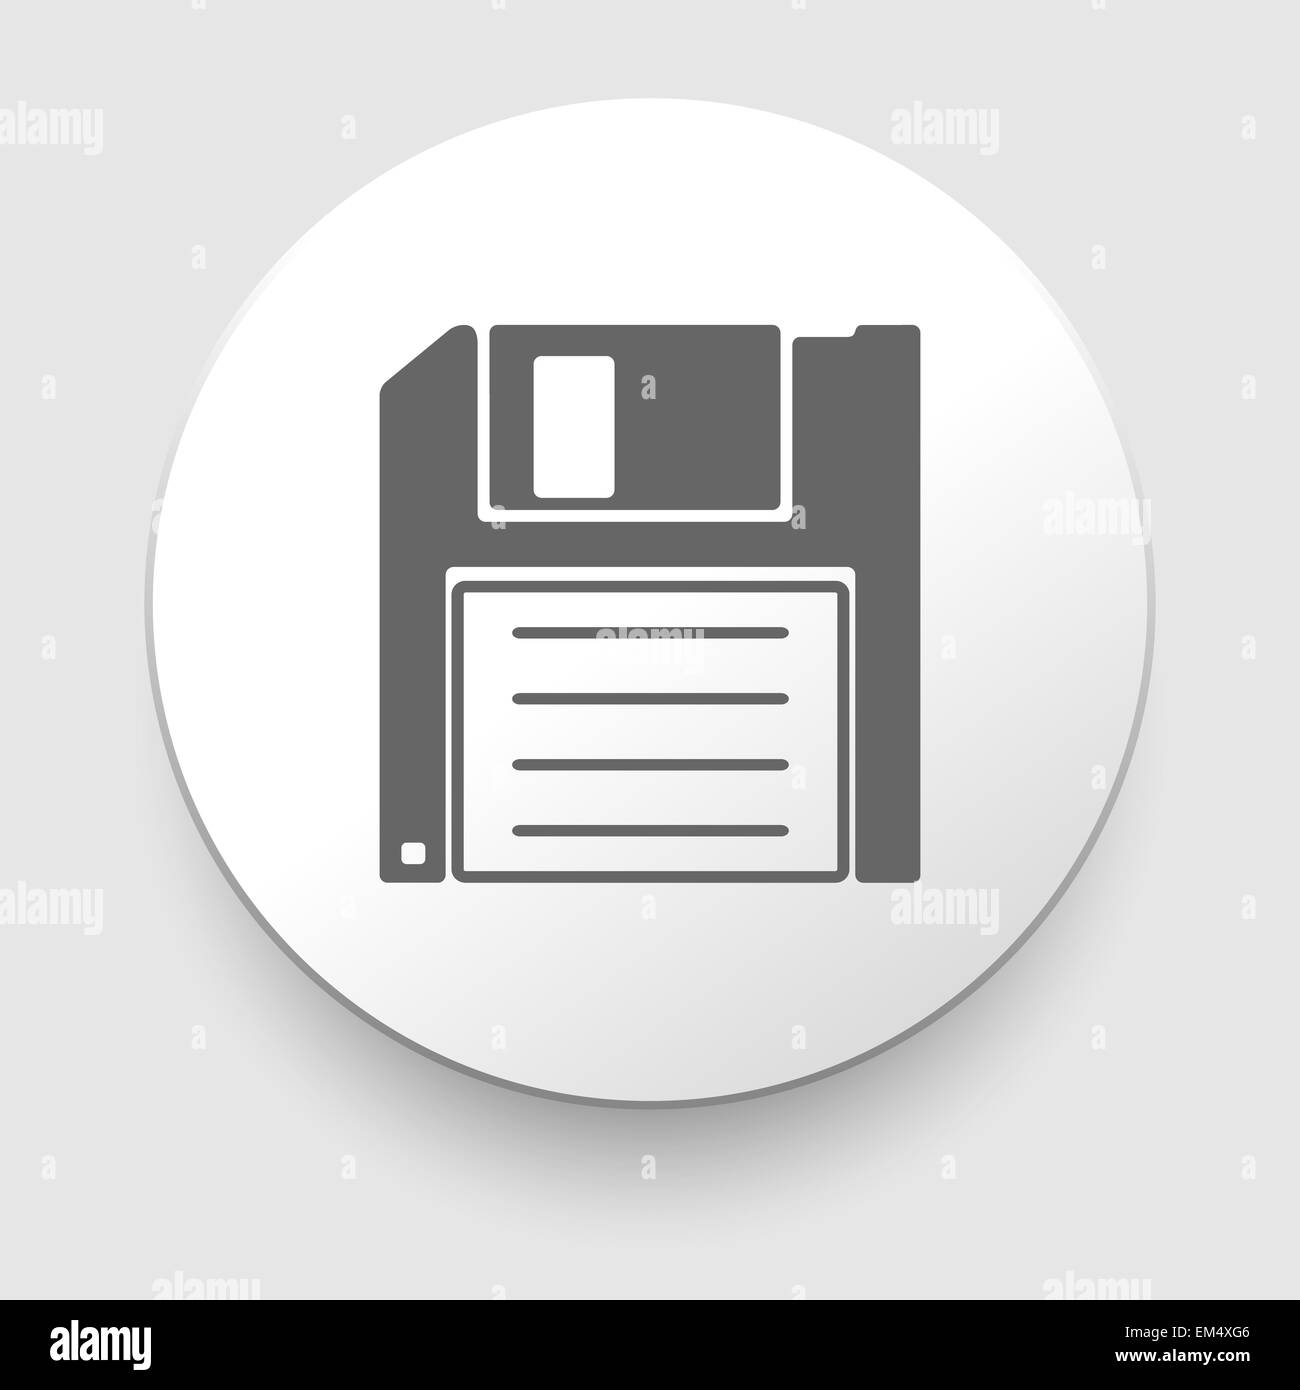 L'icône de sauvegarde - floppy Banque D'Images